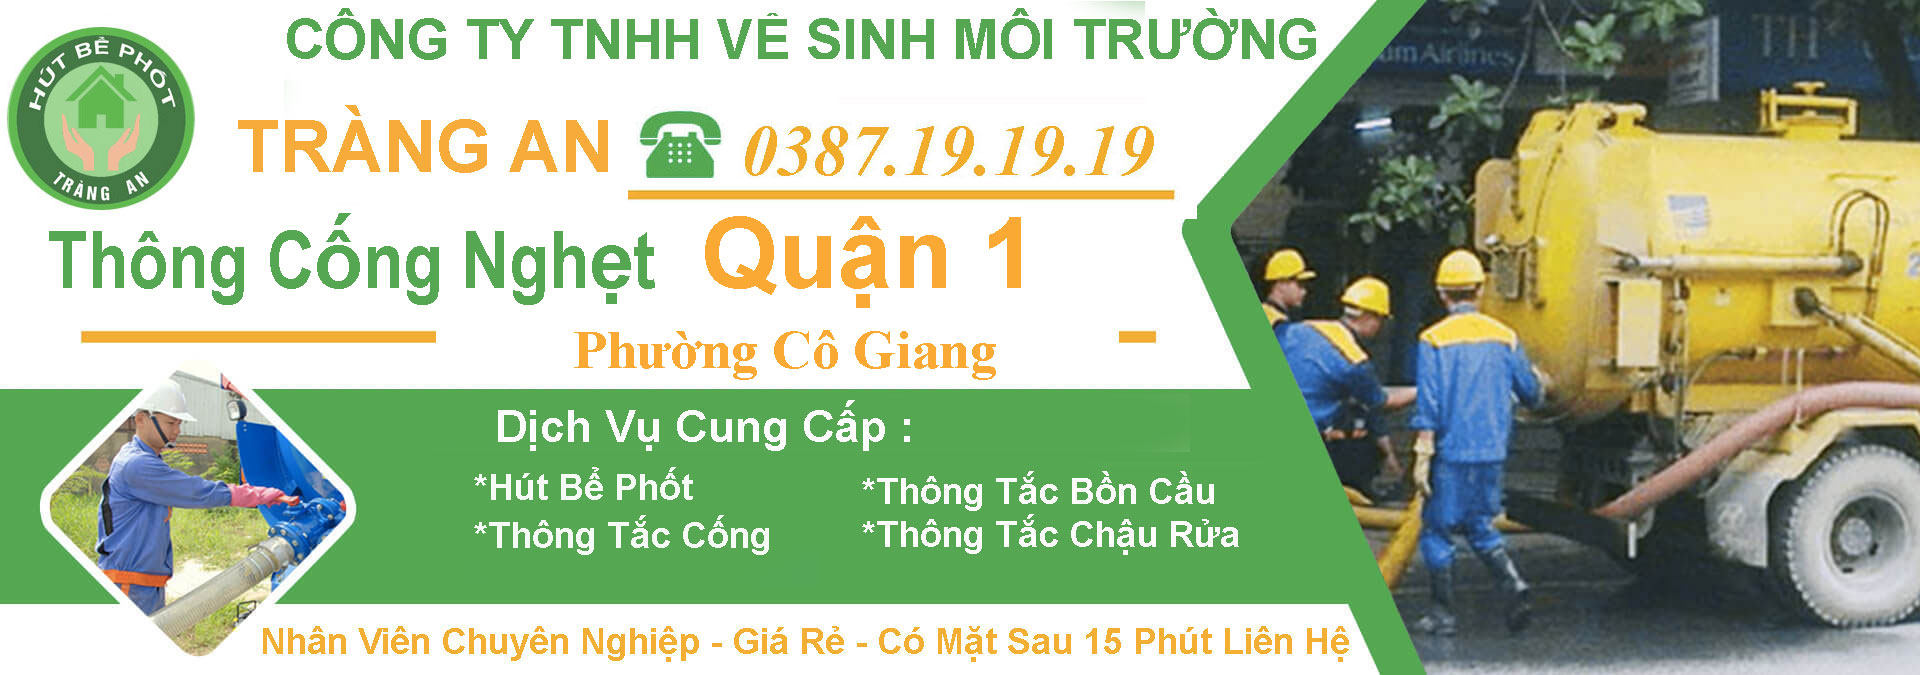 Thong Cong Nghet Quan 1 Phuong Co Giang